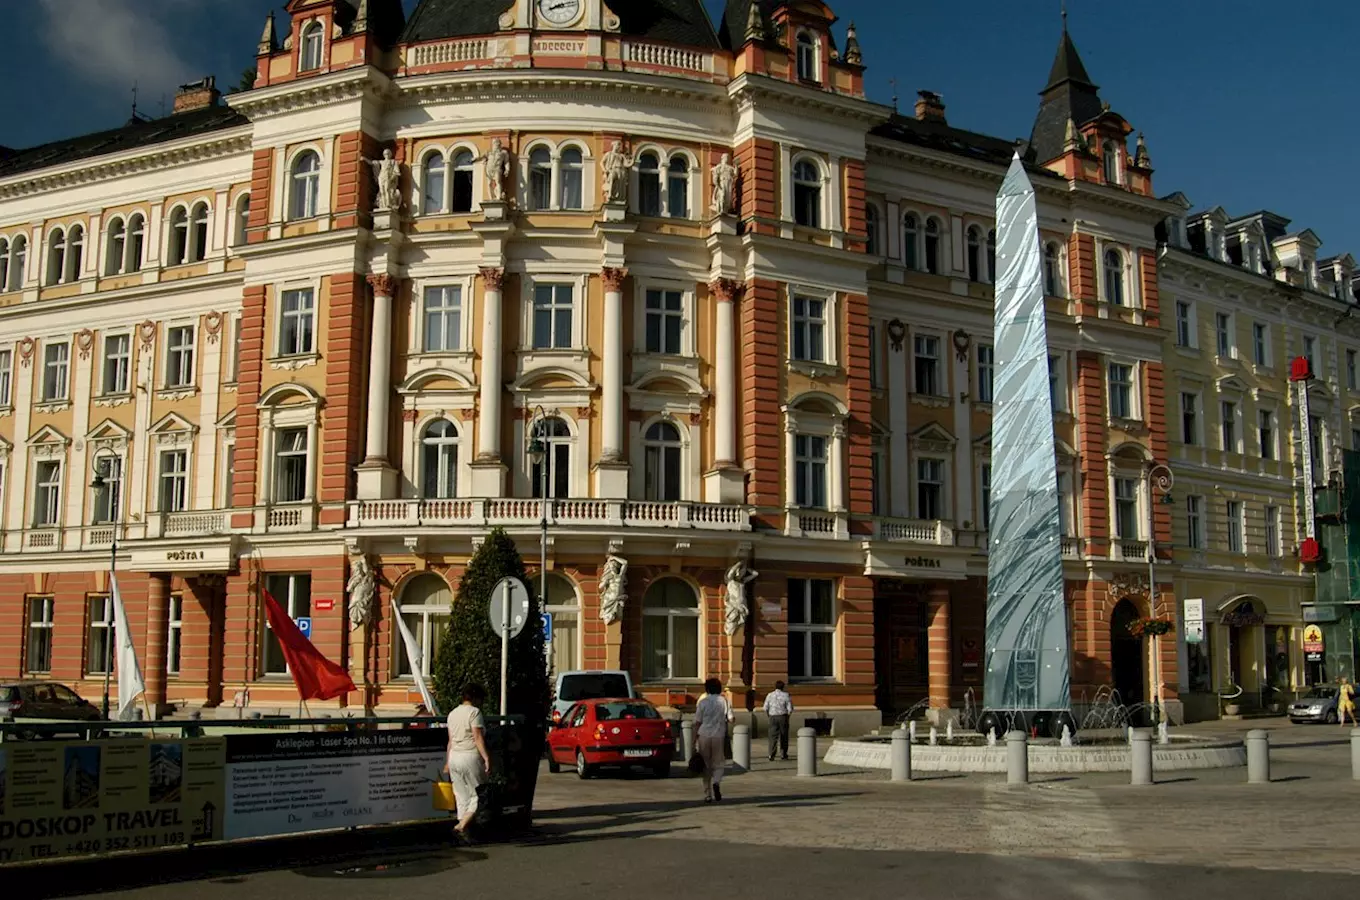 Hlavní pošta v Karlových Varech – historická budova z doby Rakouska-Uherska